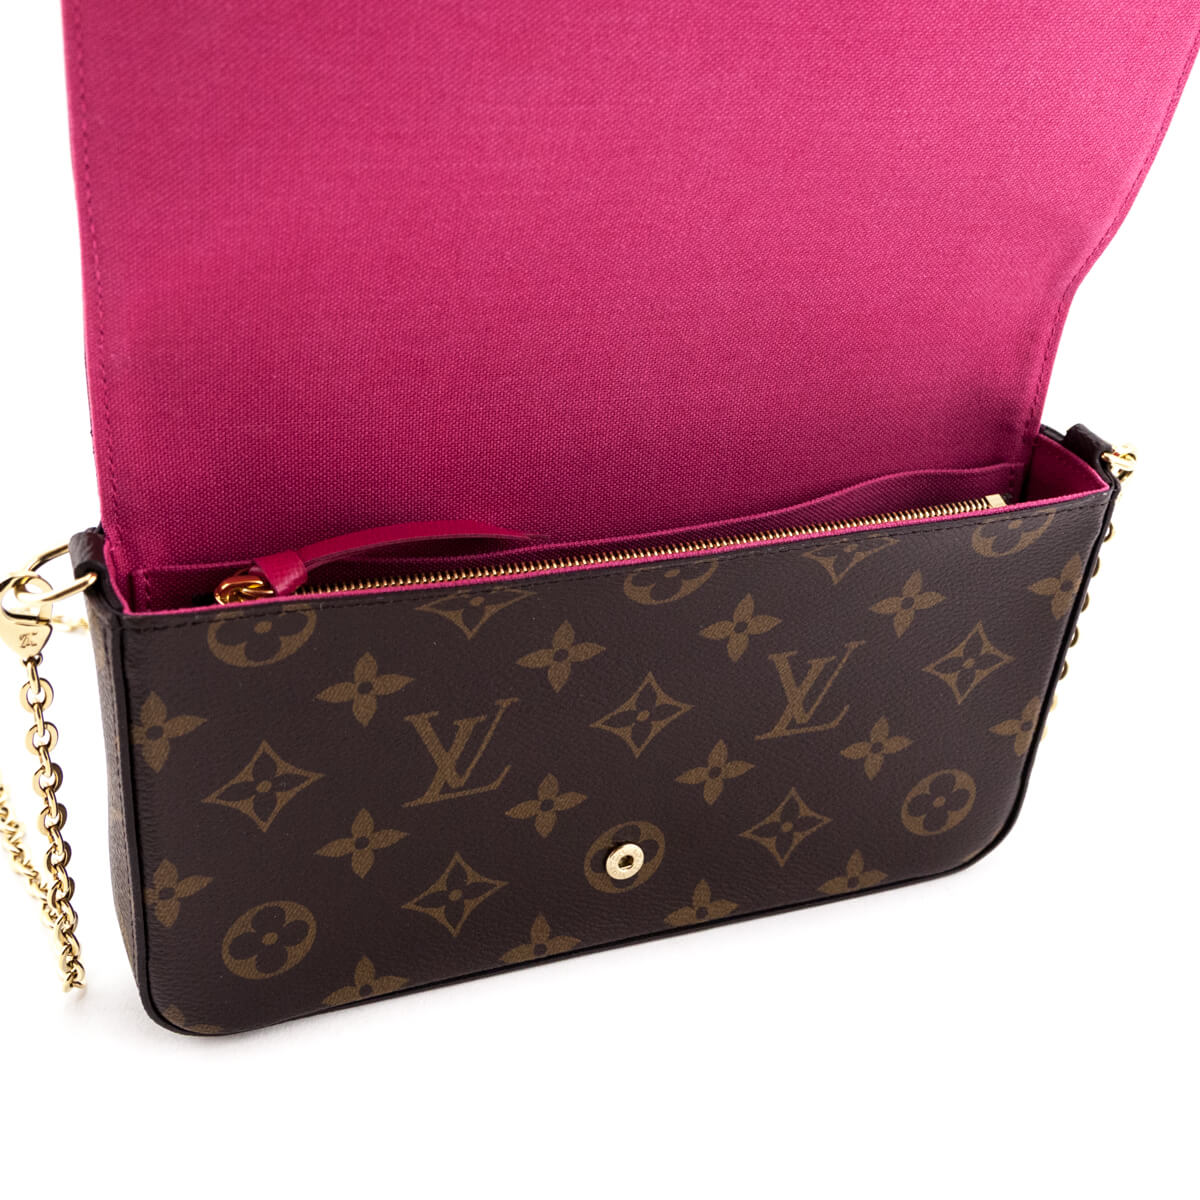 AUTHENTIC Louis Vuitton Hollywood Vivienne zippy wallet